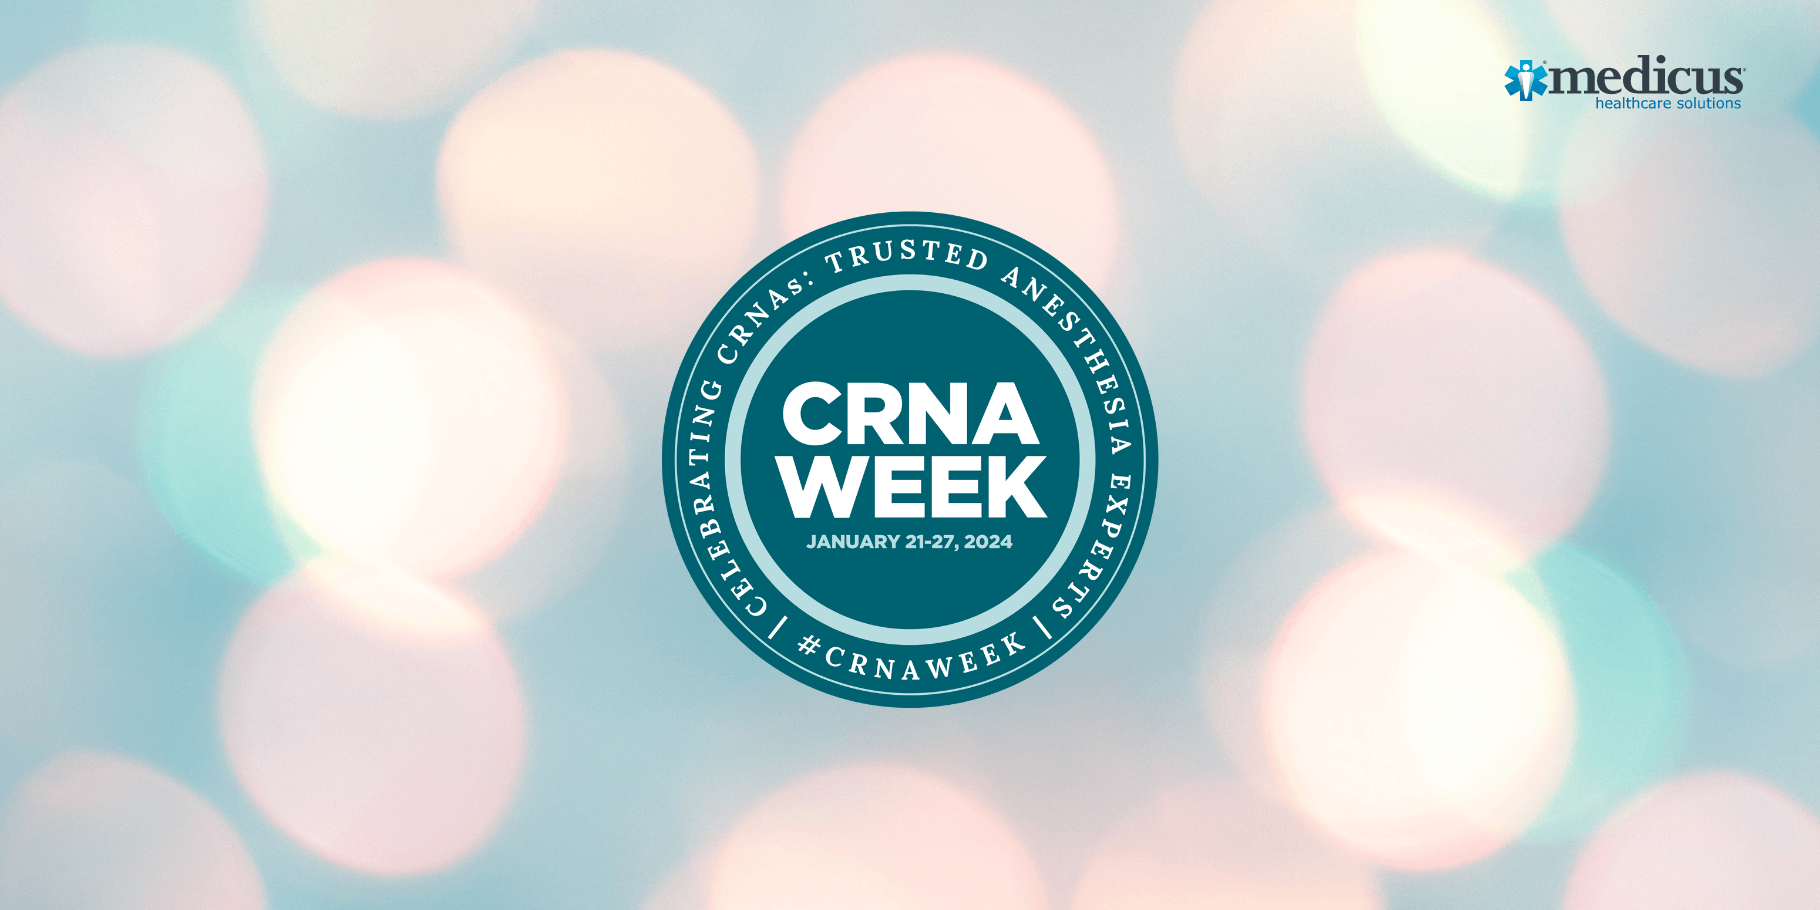 Medicus is proud to celebrate CRNA Week 2024